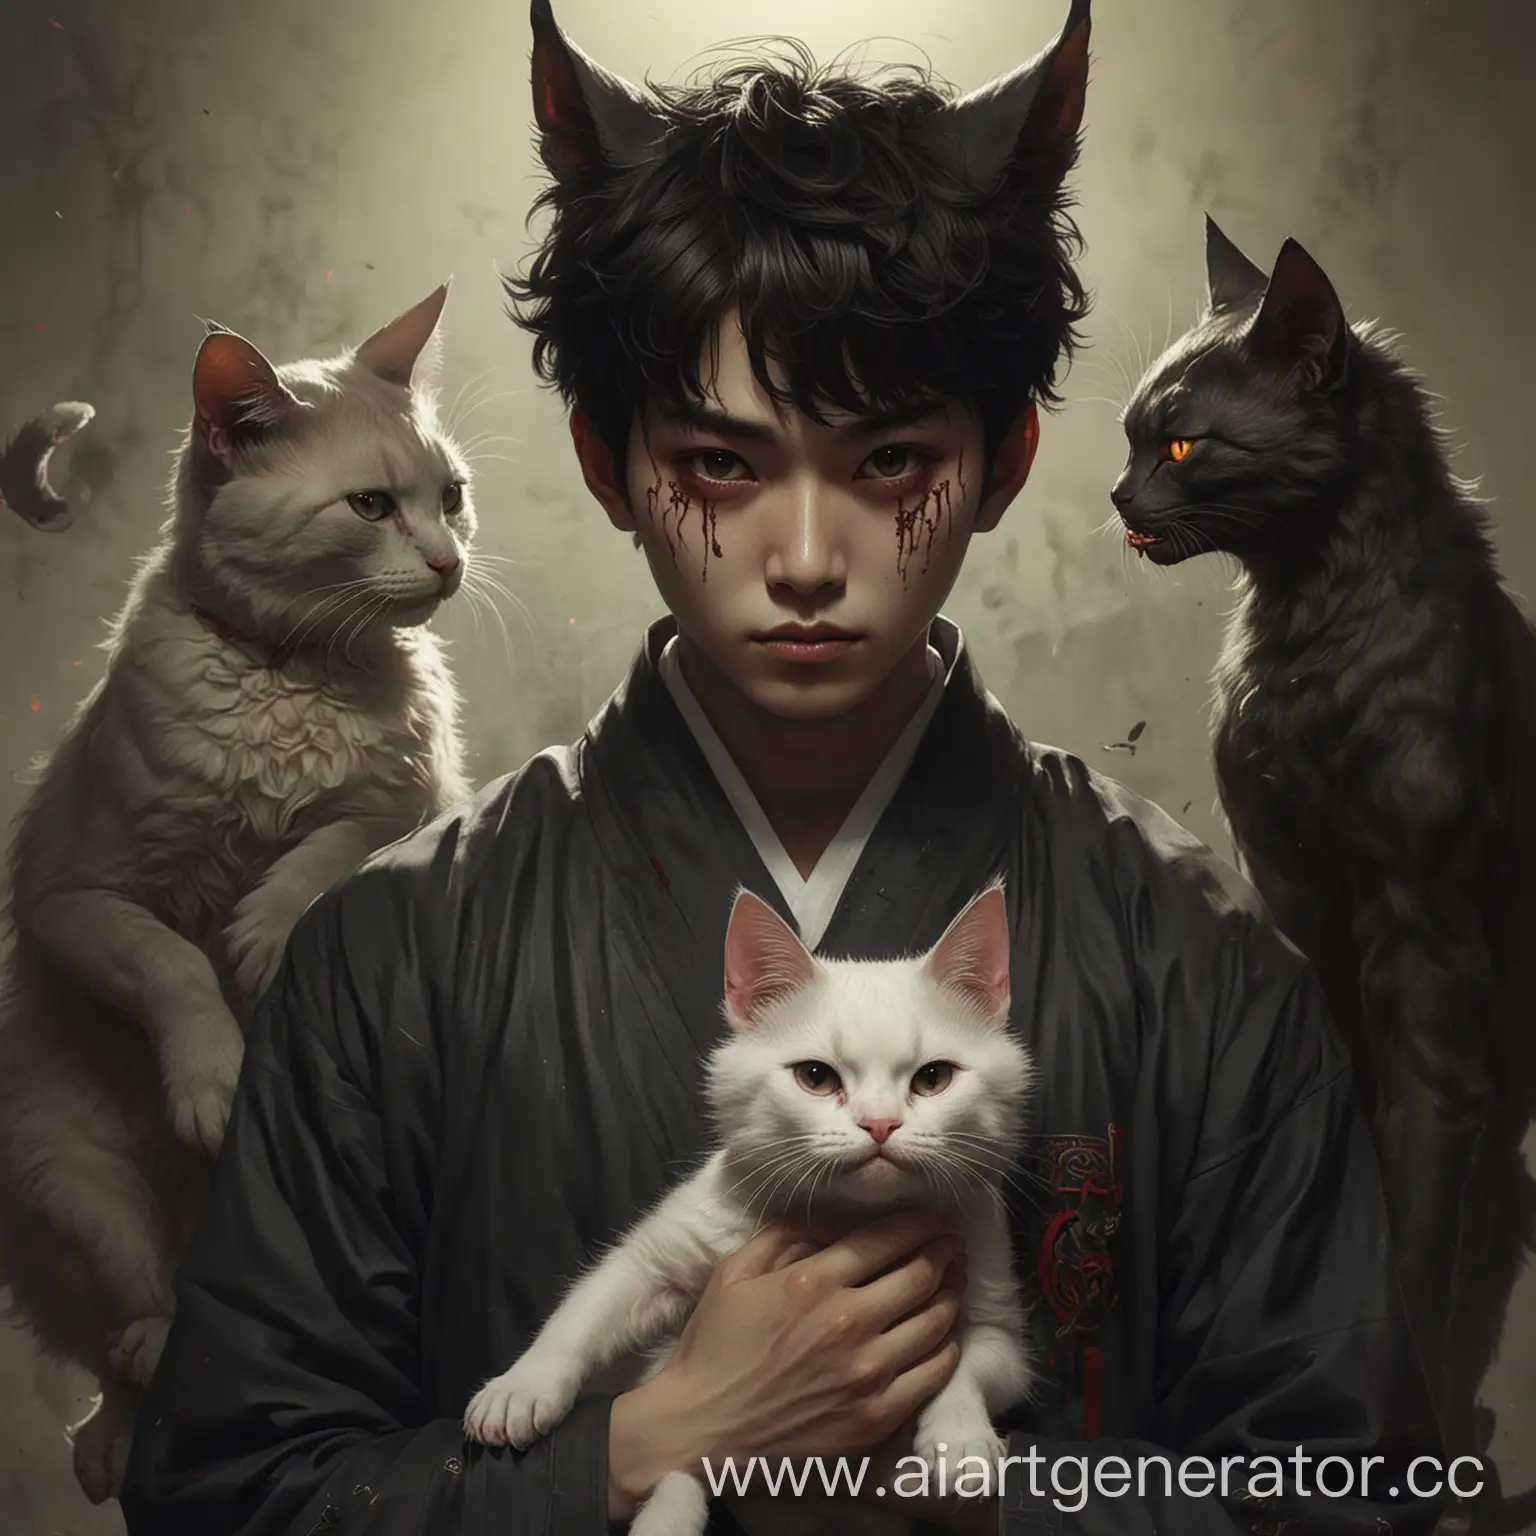 Boy-with-Cat-in-Korean-Demon-Costume